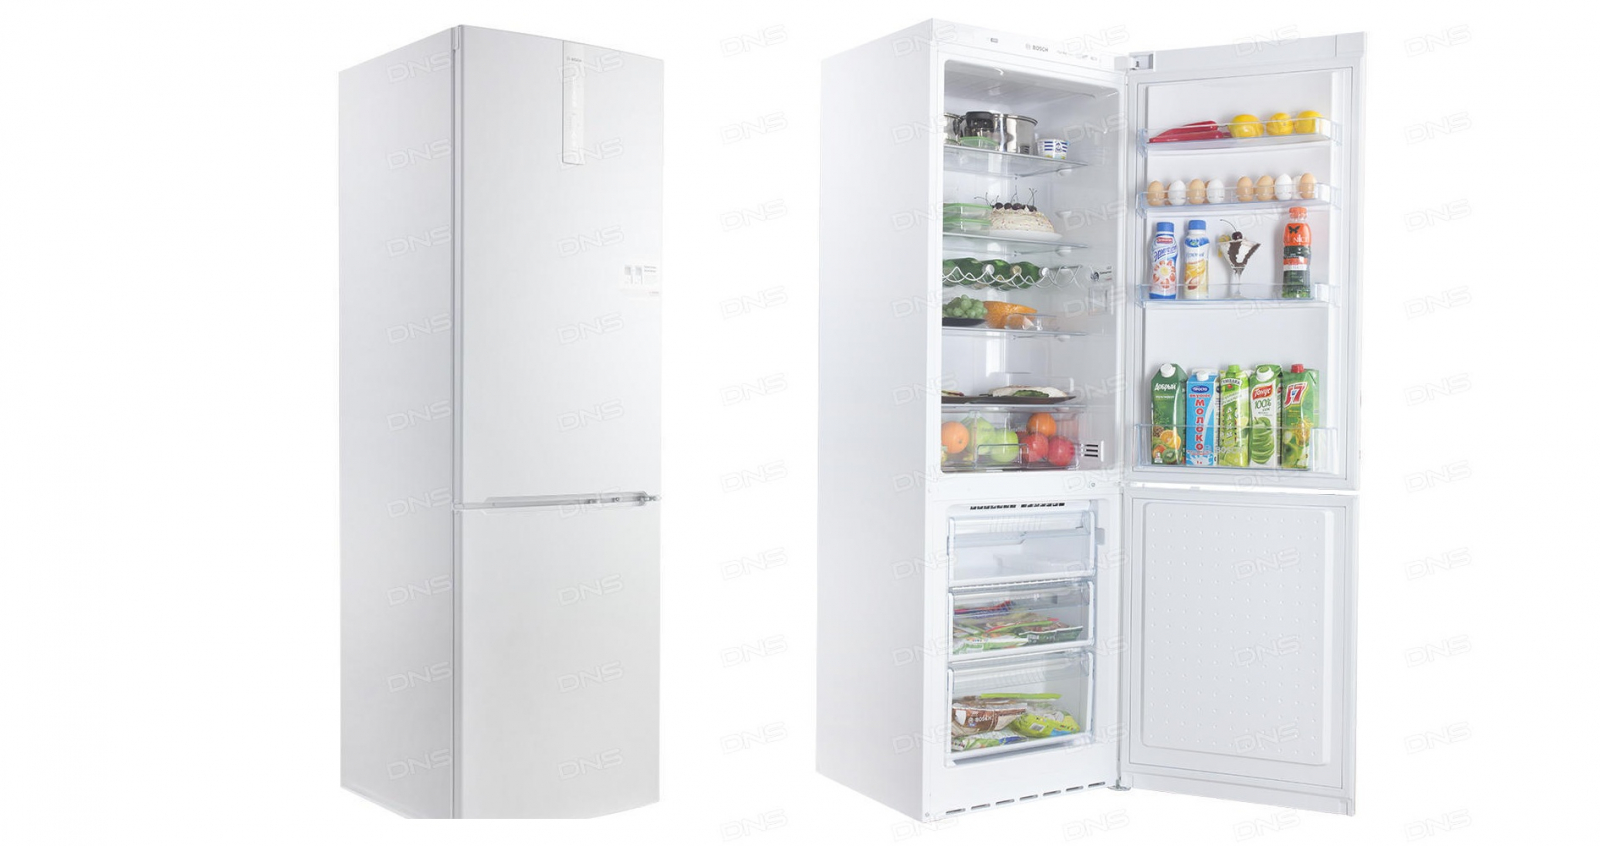 холодильник bosch kgn36nw10r, купить в Красноярске холодильник bosch kgn36nw10r,  купить в Красноярске дешево холодильник bosch kgn36nw10r, купить в Красноярске минимальной цене холодильник bosch kgn36nw10r